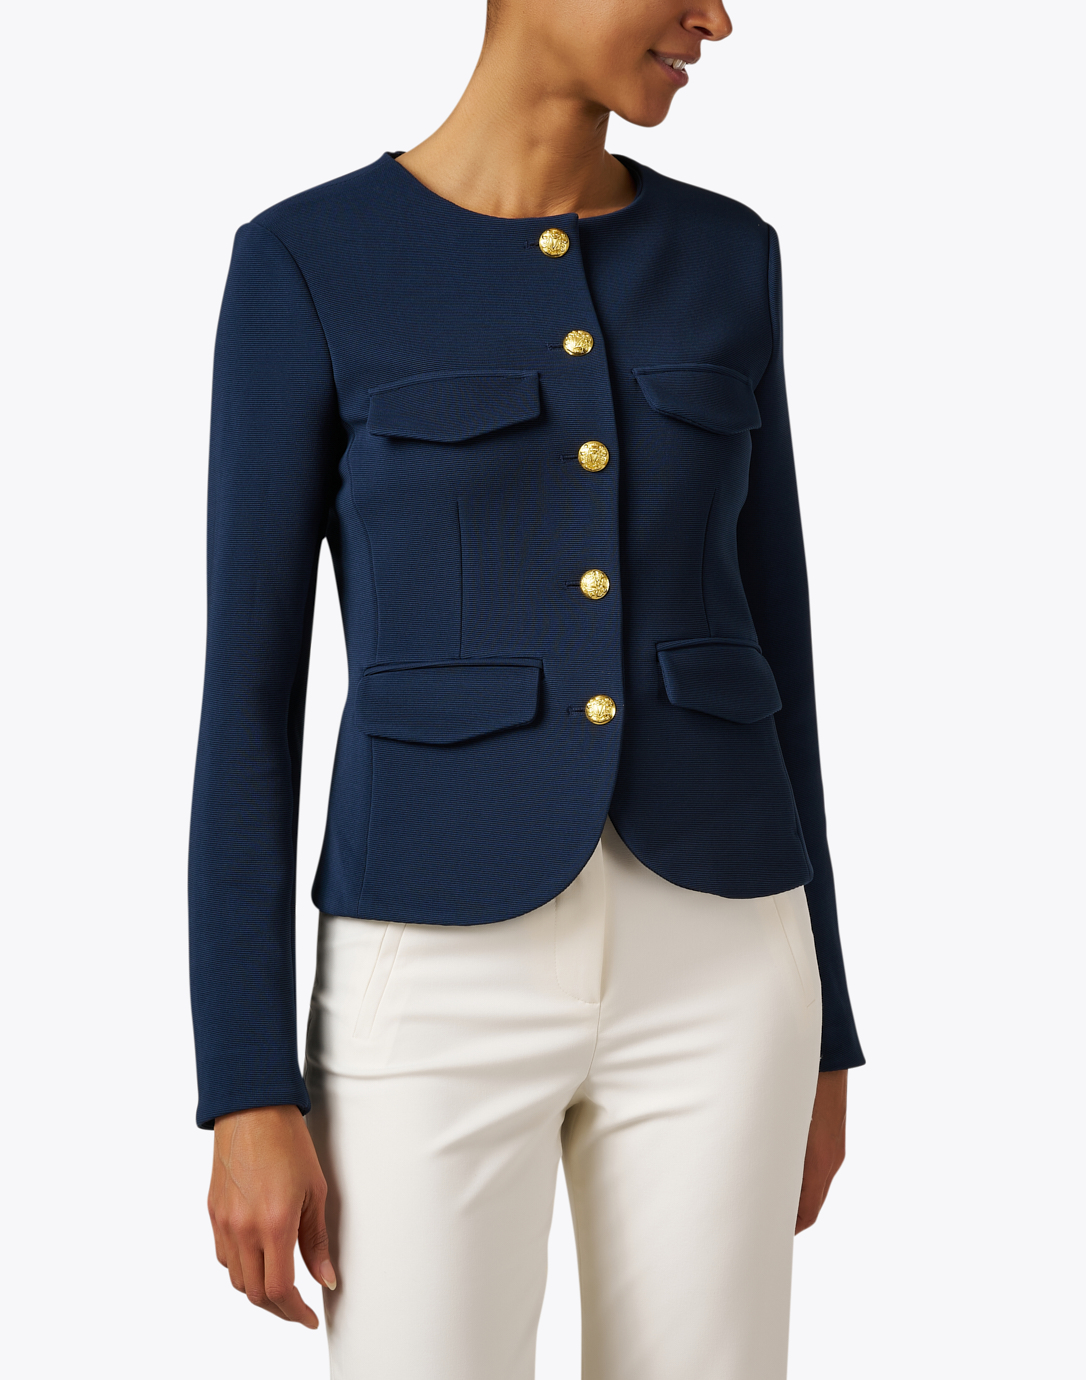 Kensington Navy Knit Jacket